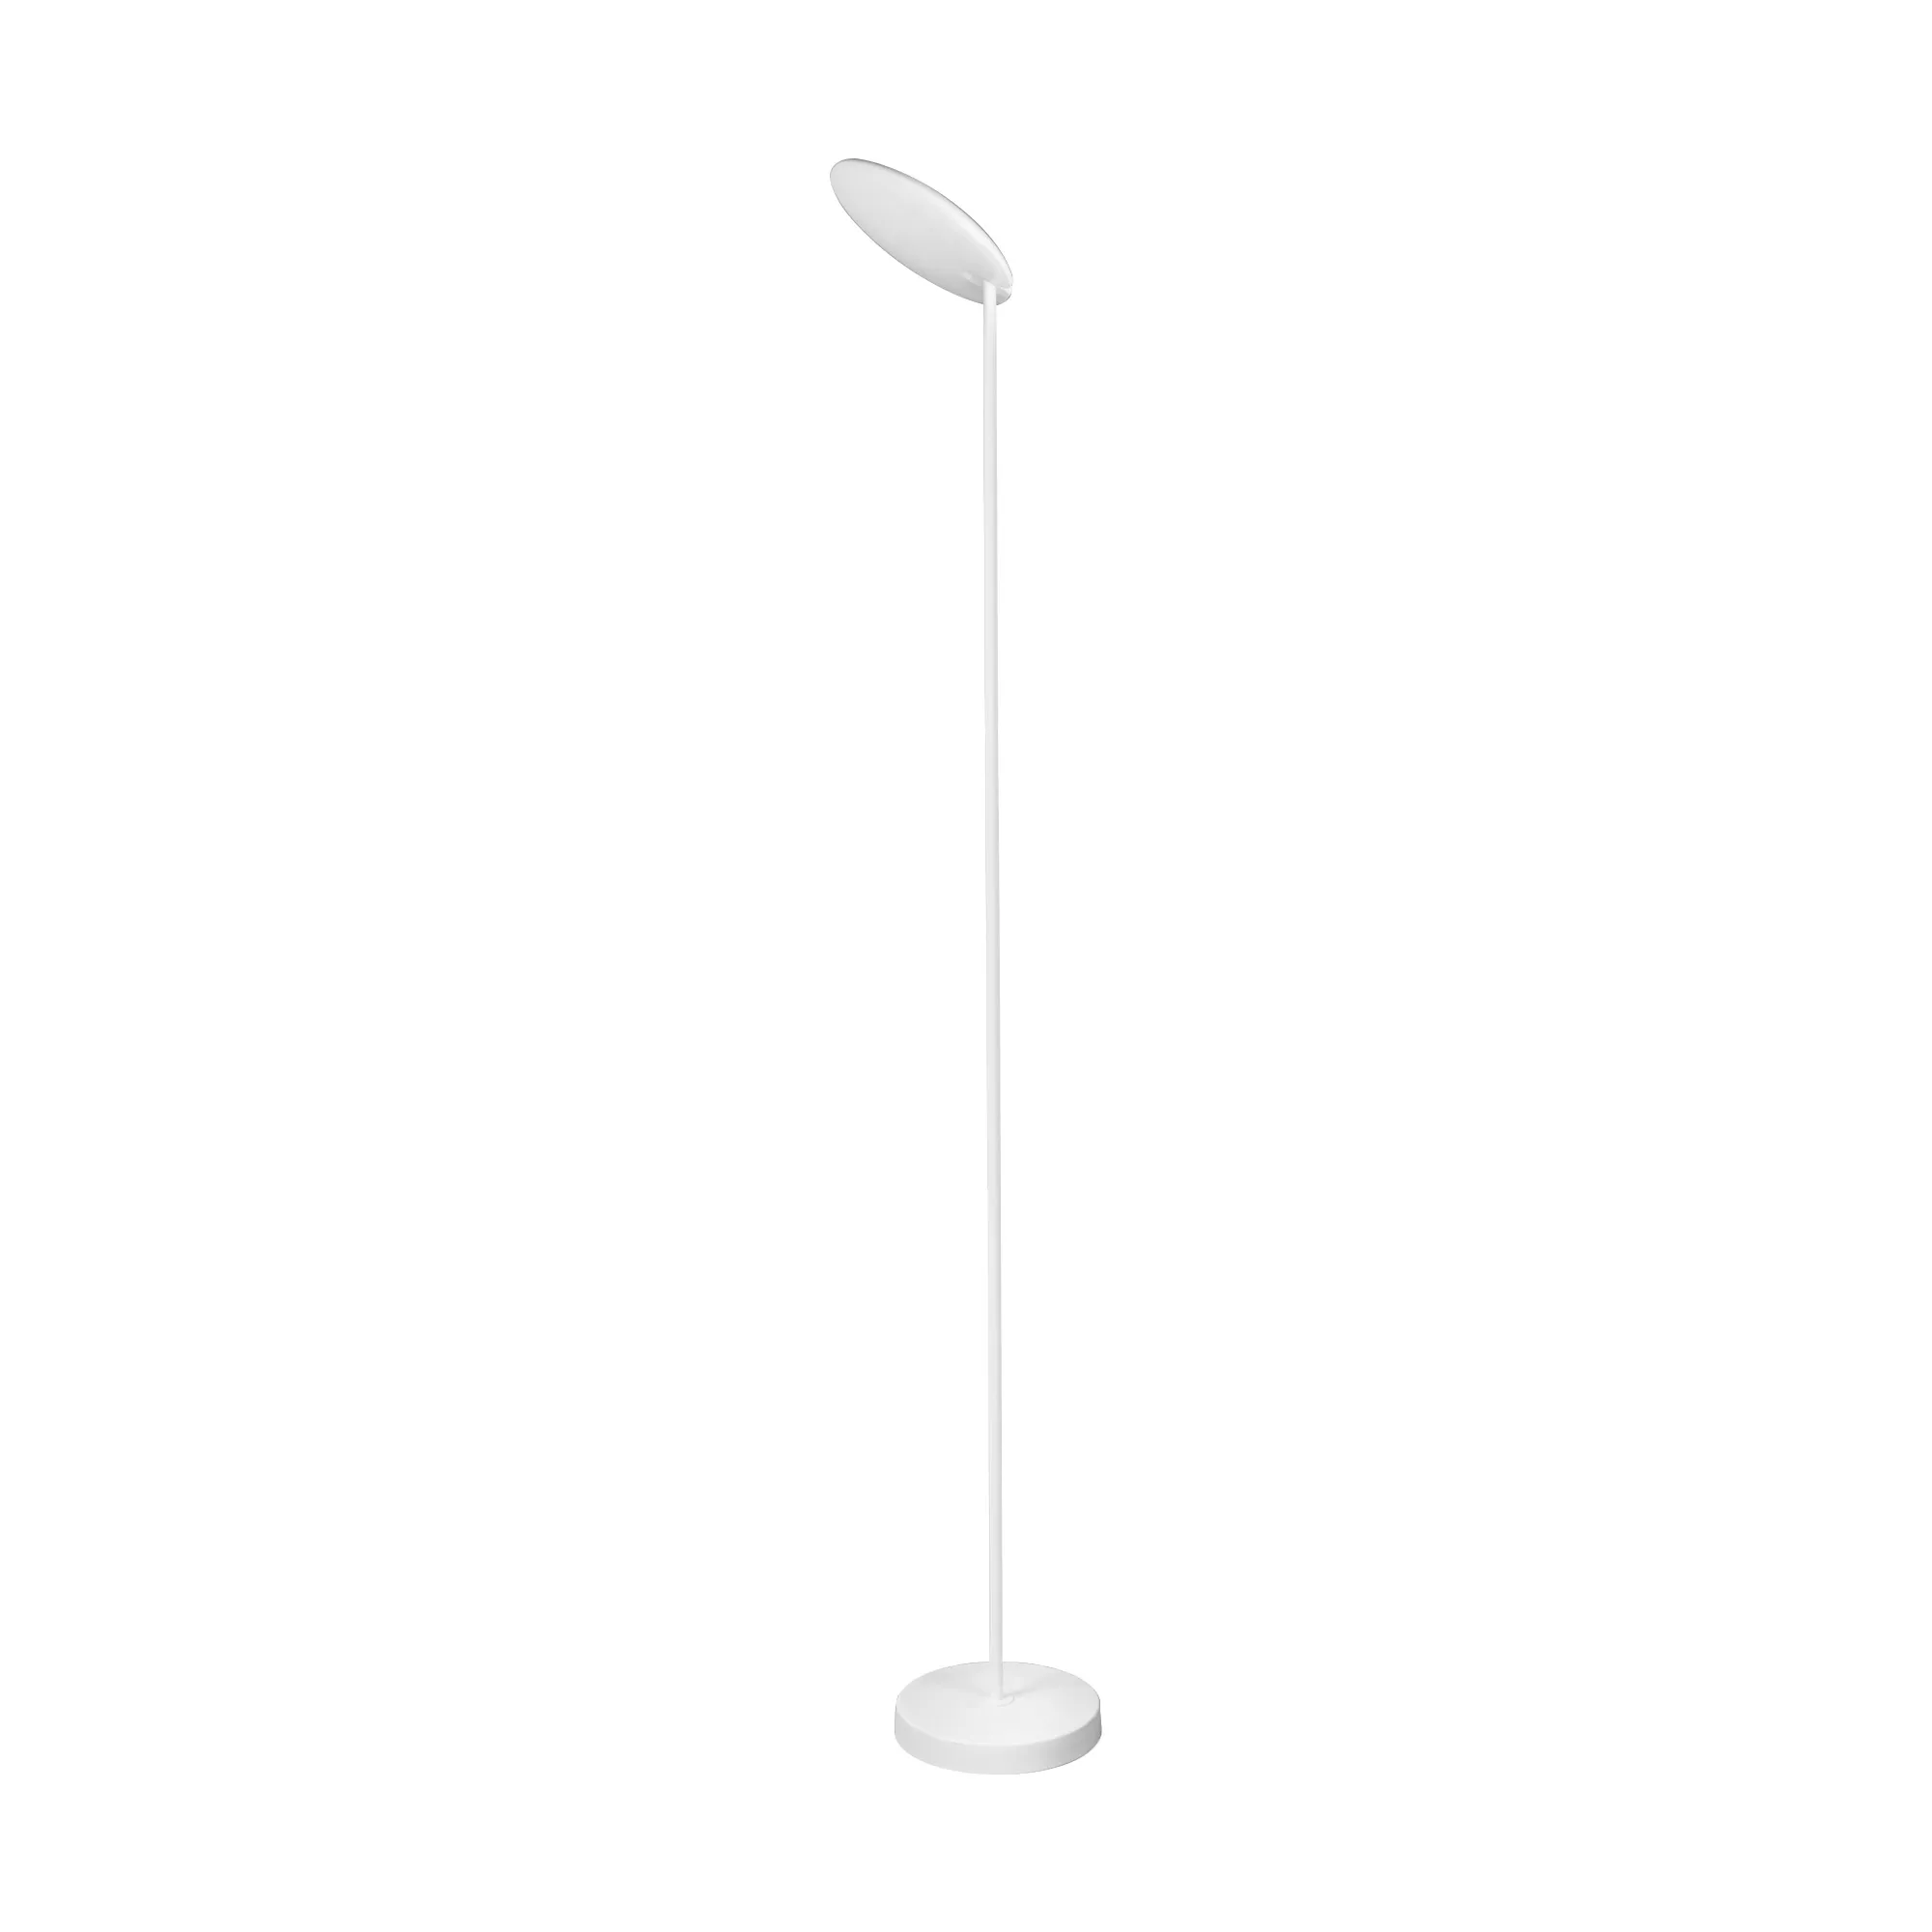 M8510  Nassau Floor Lamp 182cm 30W LED 3000K Dimmable White